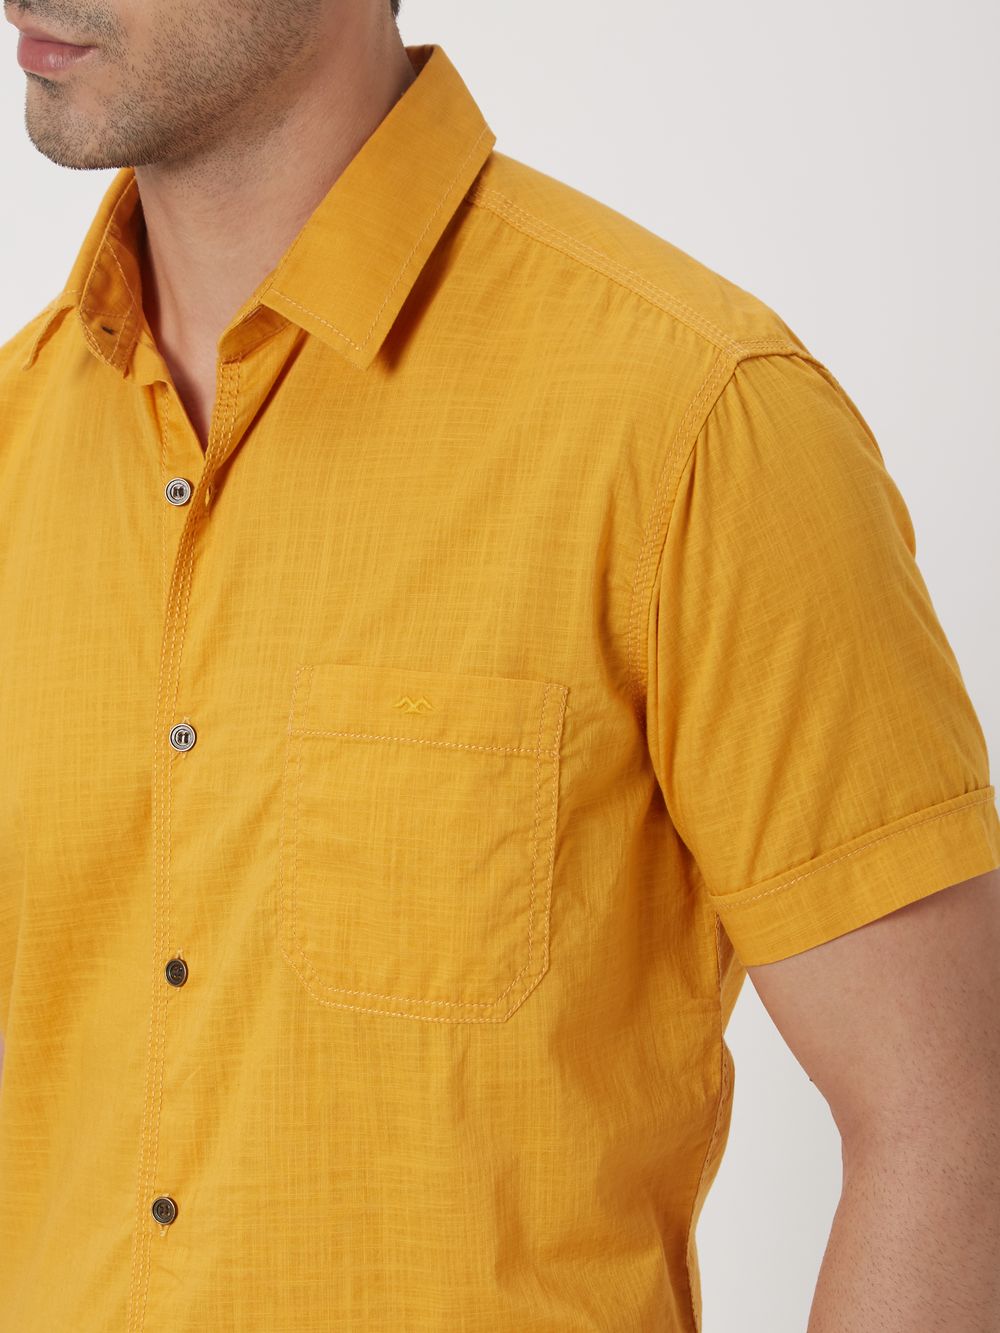 Mustard Textured Plain Shirt